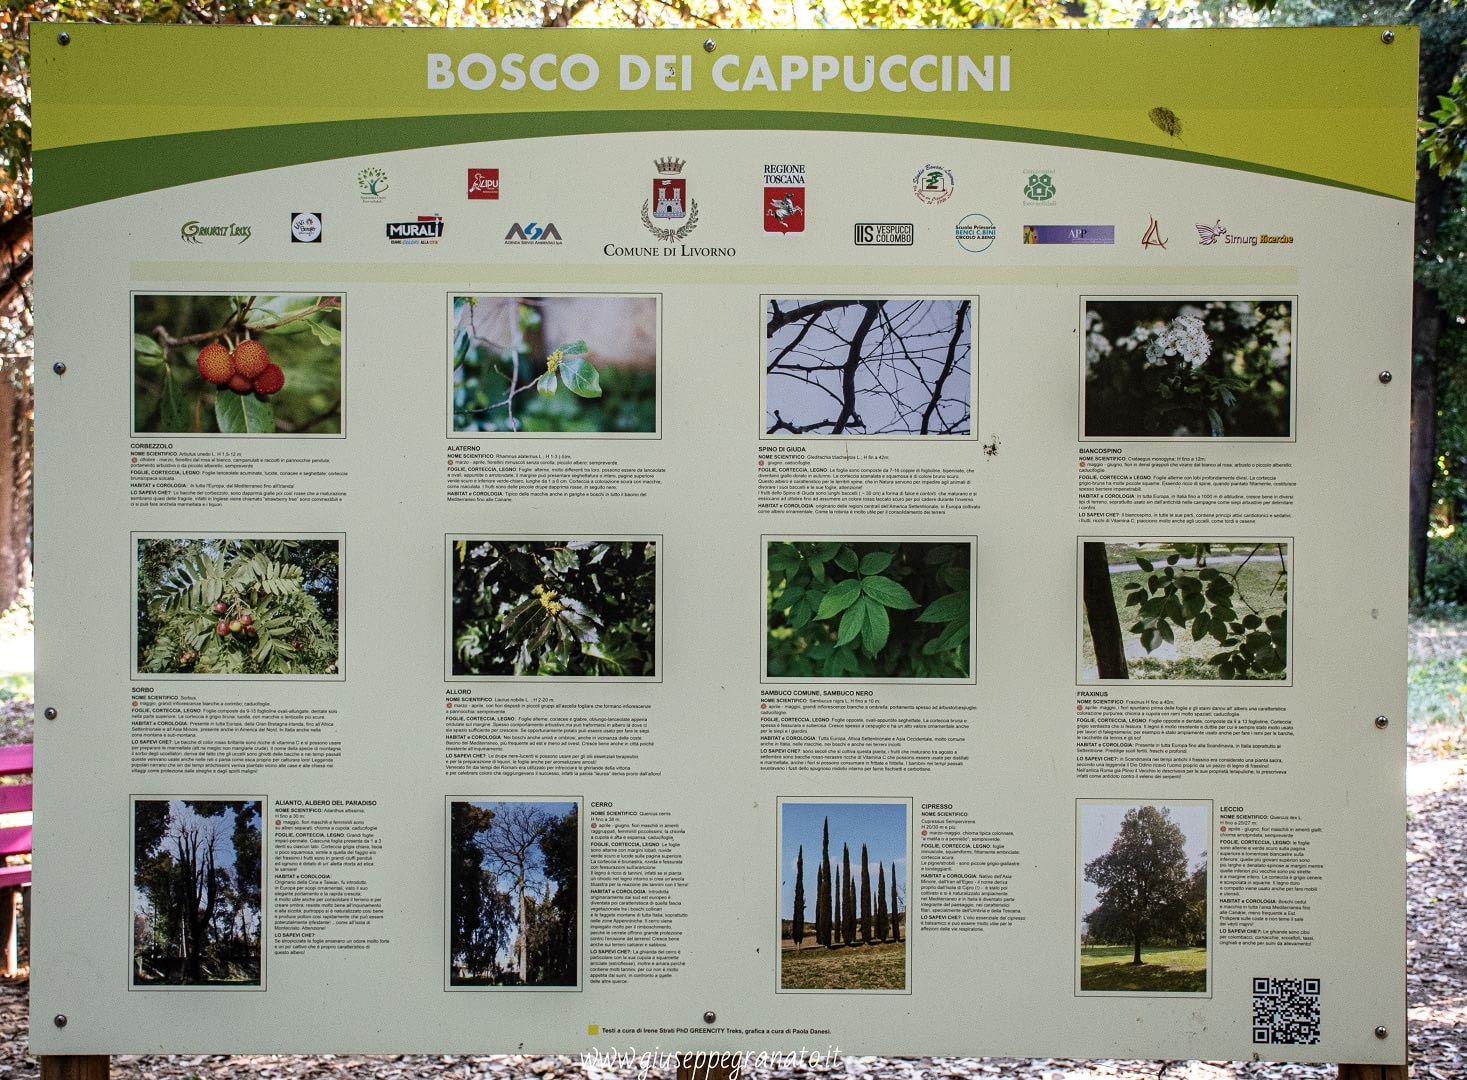 Cartellone descrizione vegetazione all'interno del Bosco dei Cappuccini